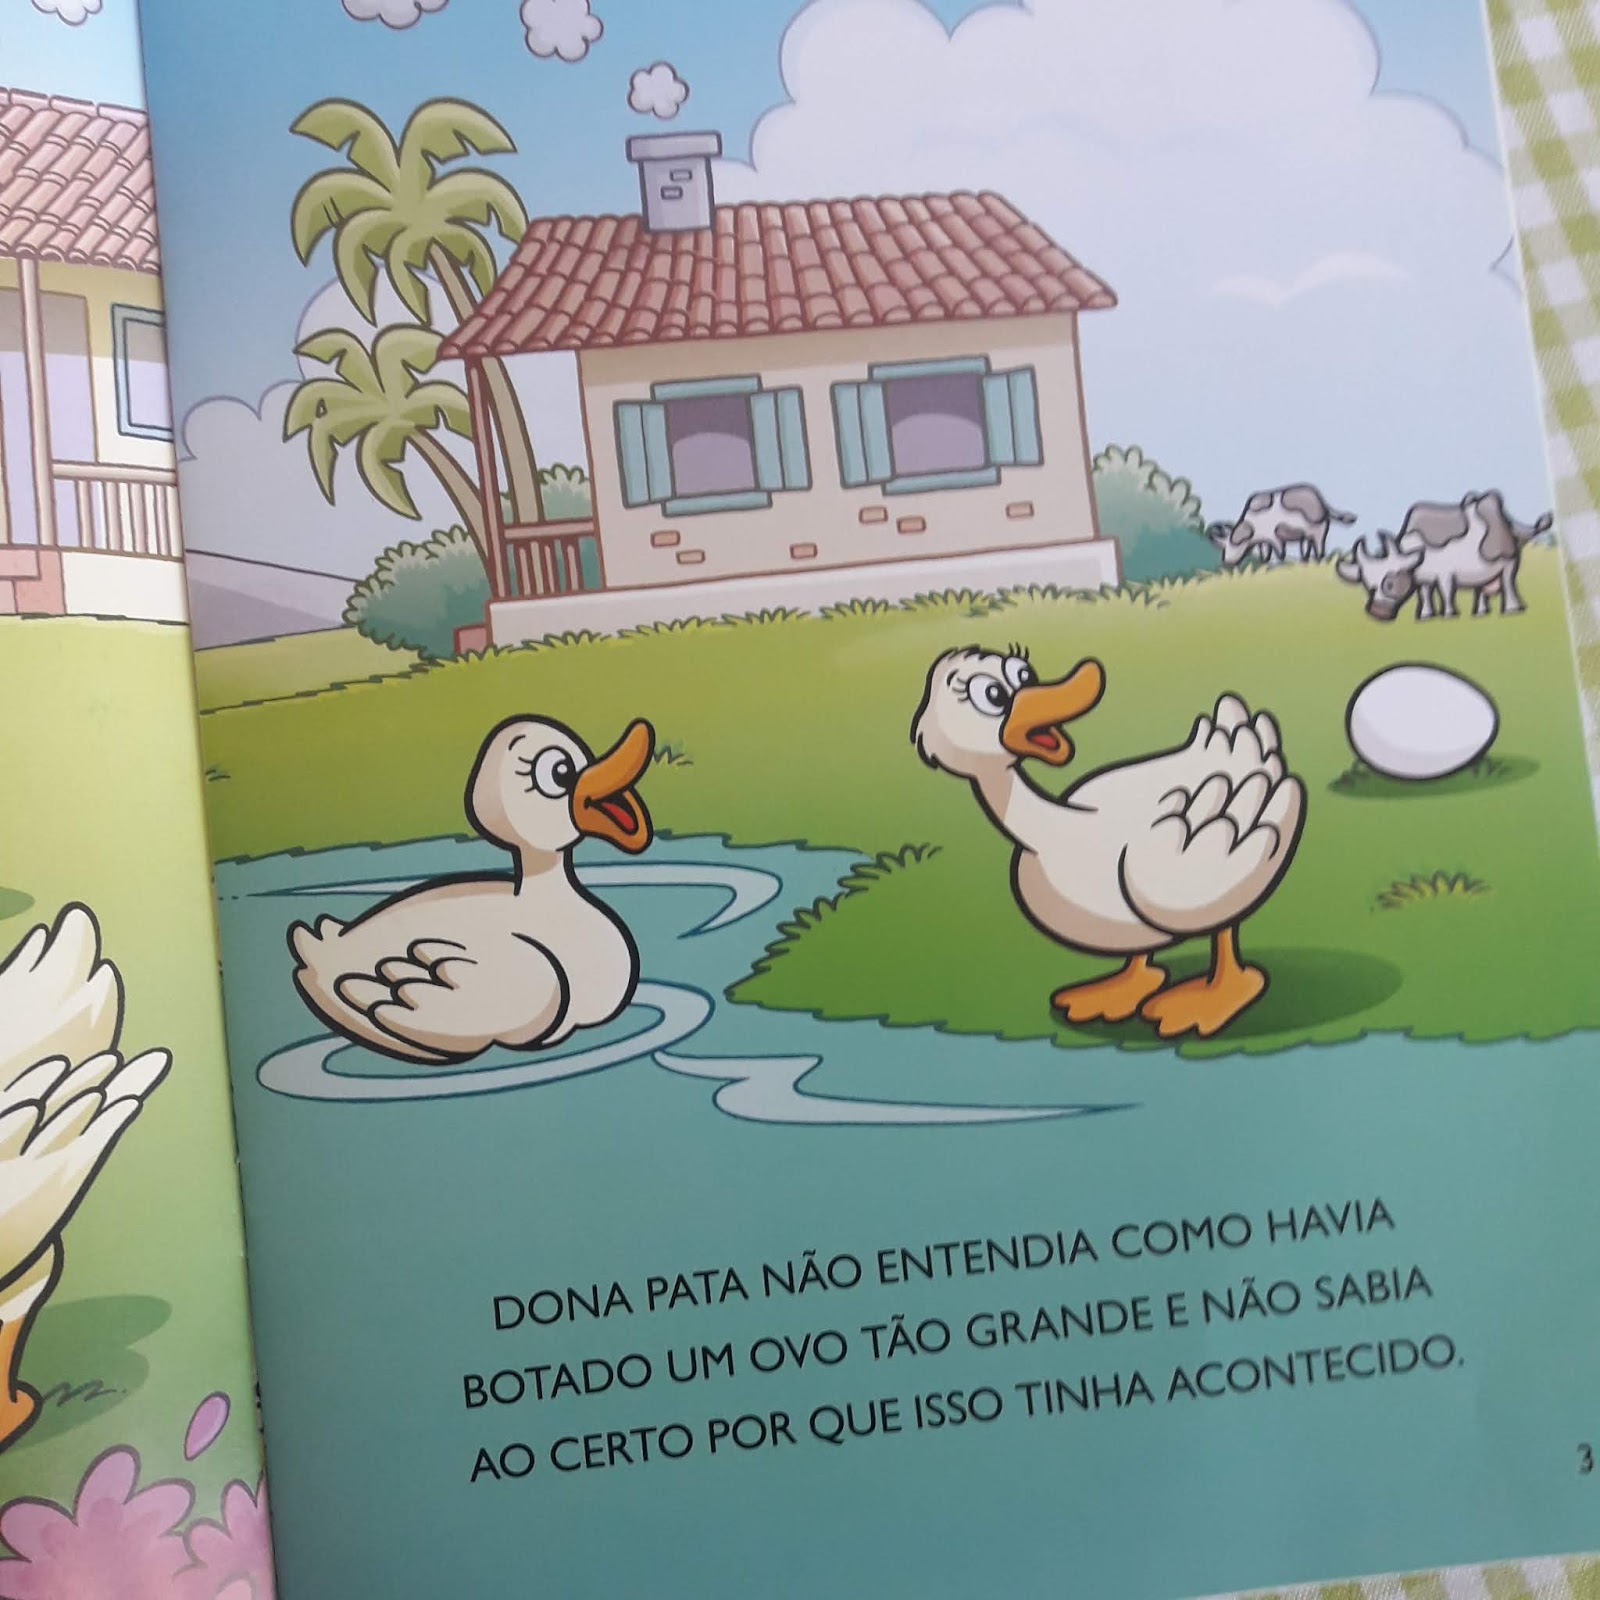 Livro Infantil Quebra Cabeça O Patinho Feio Editora Online